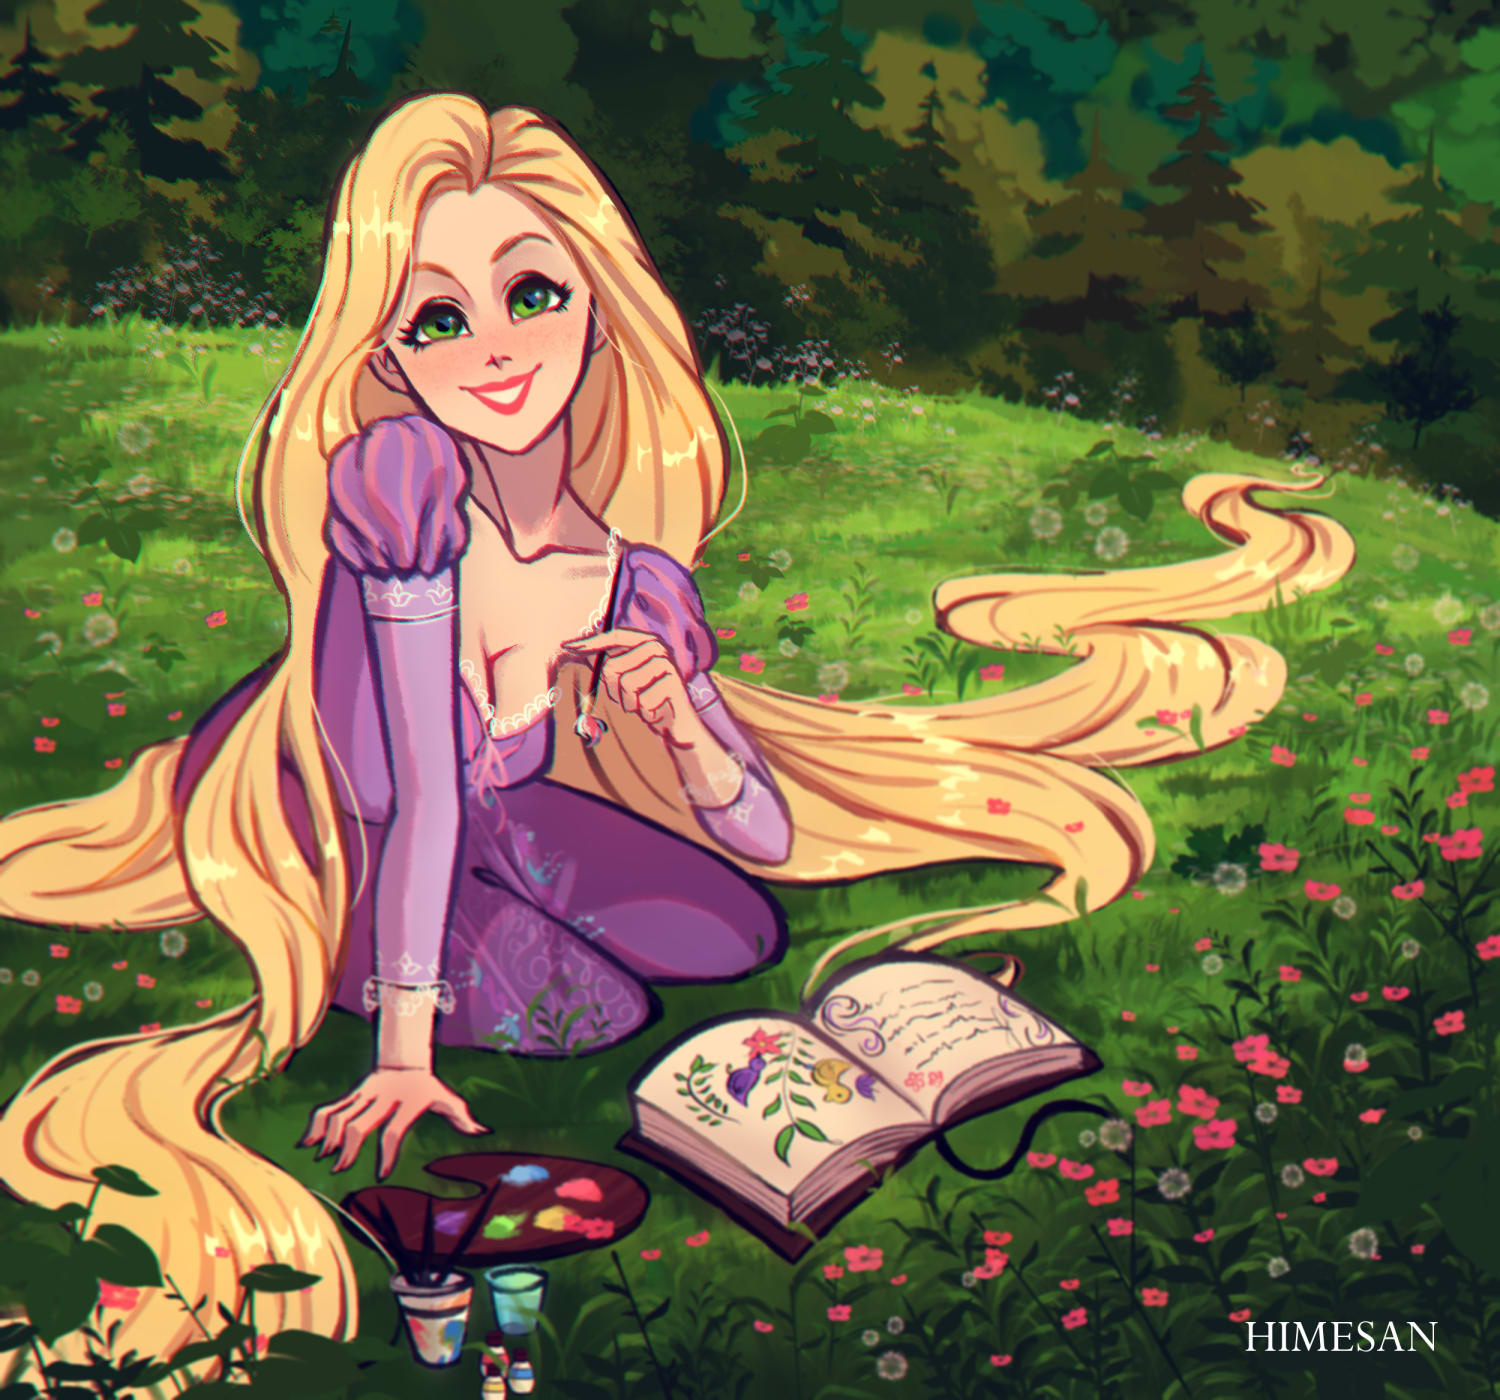 Hi! I drew Rapunzel, hope you like it